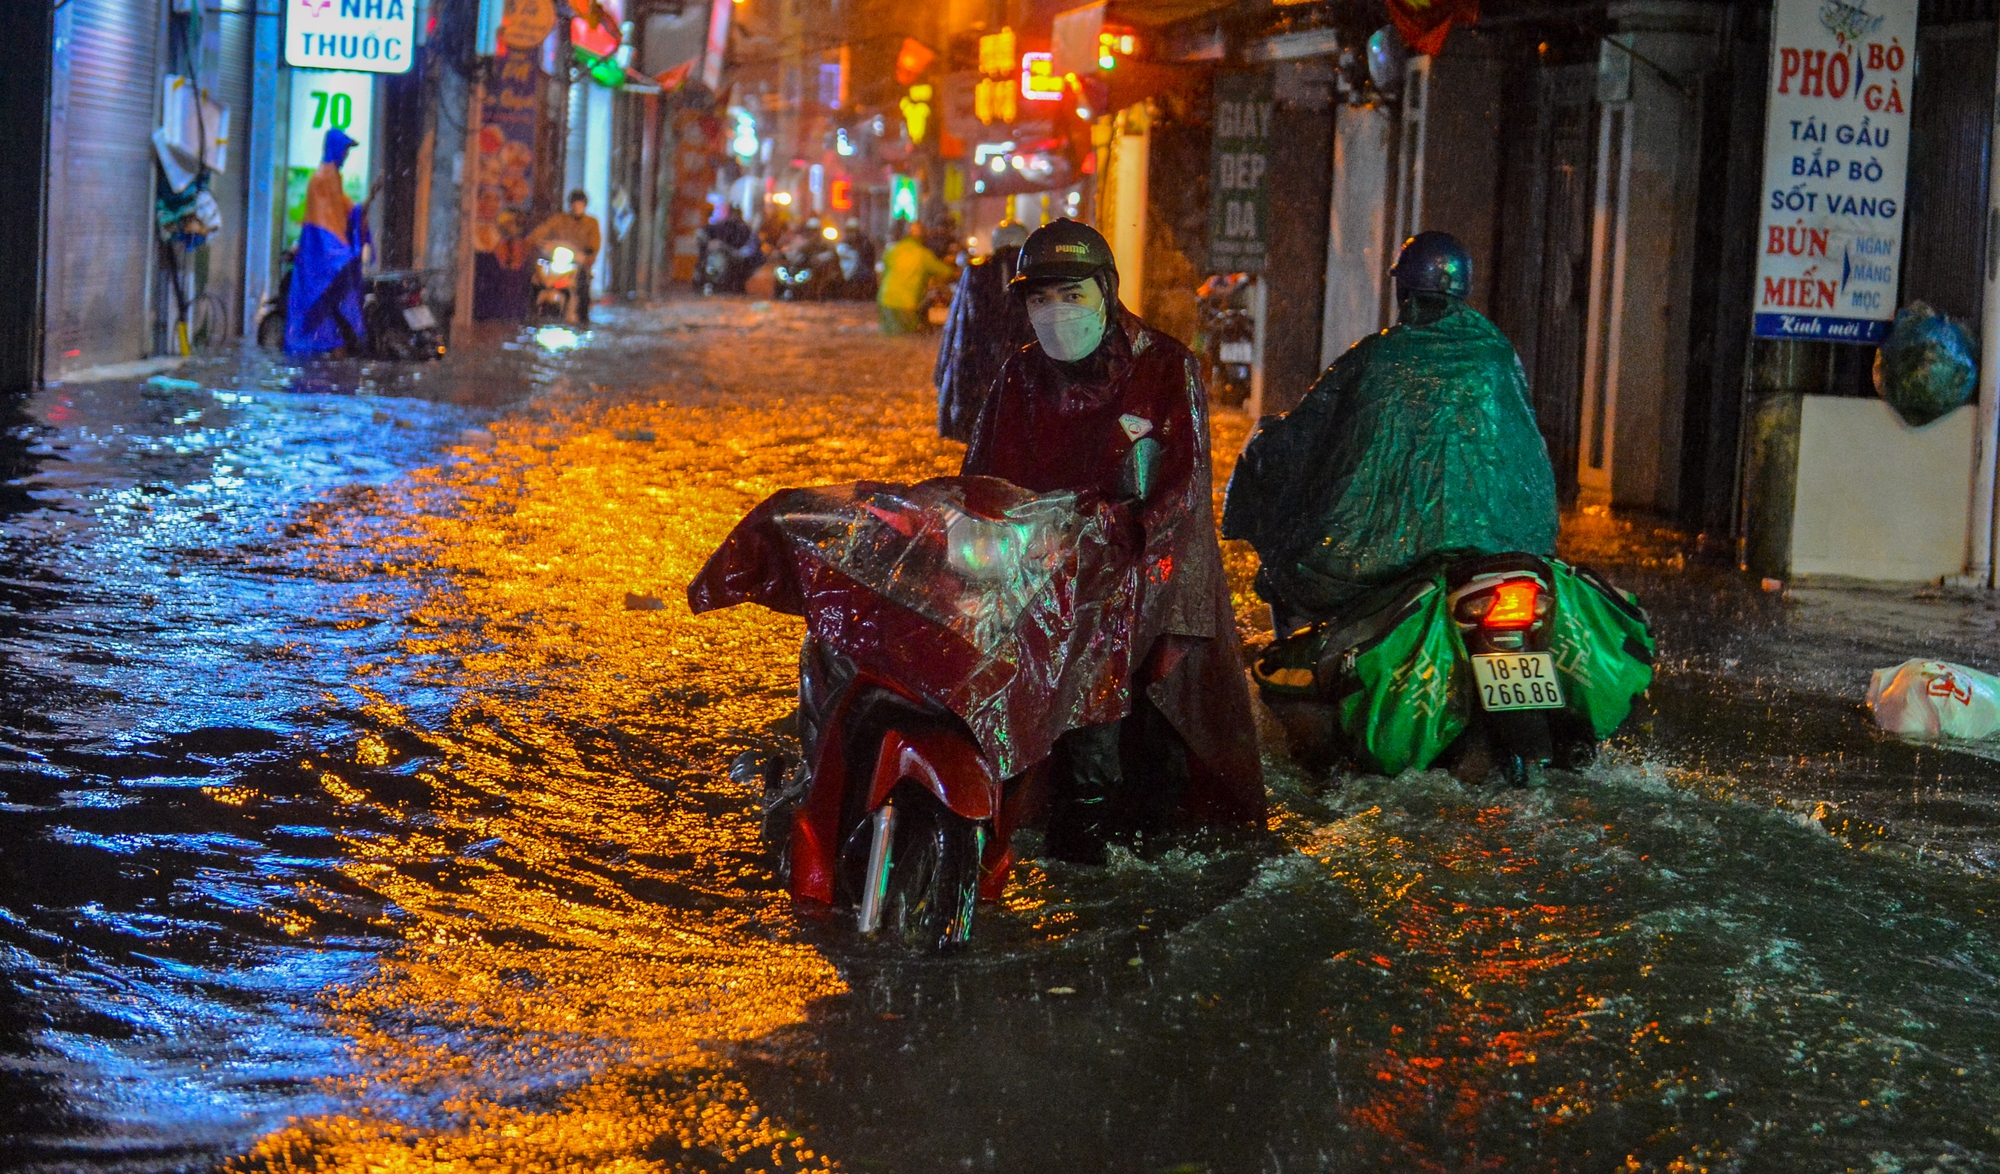 Mưa xối xả khiến đường Hà Nội chìm trong biển nước, sóng đánh đổ xe máy - Ảnh 2.